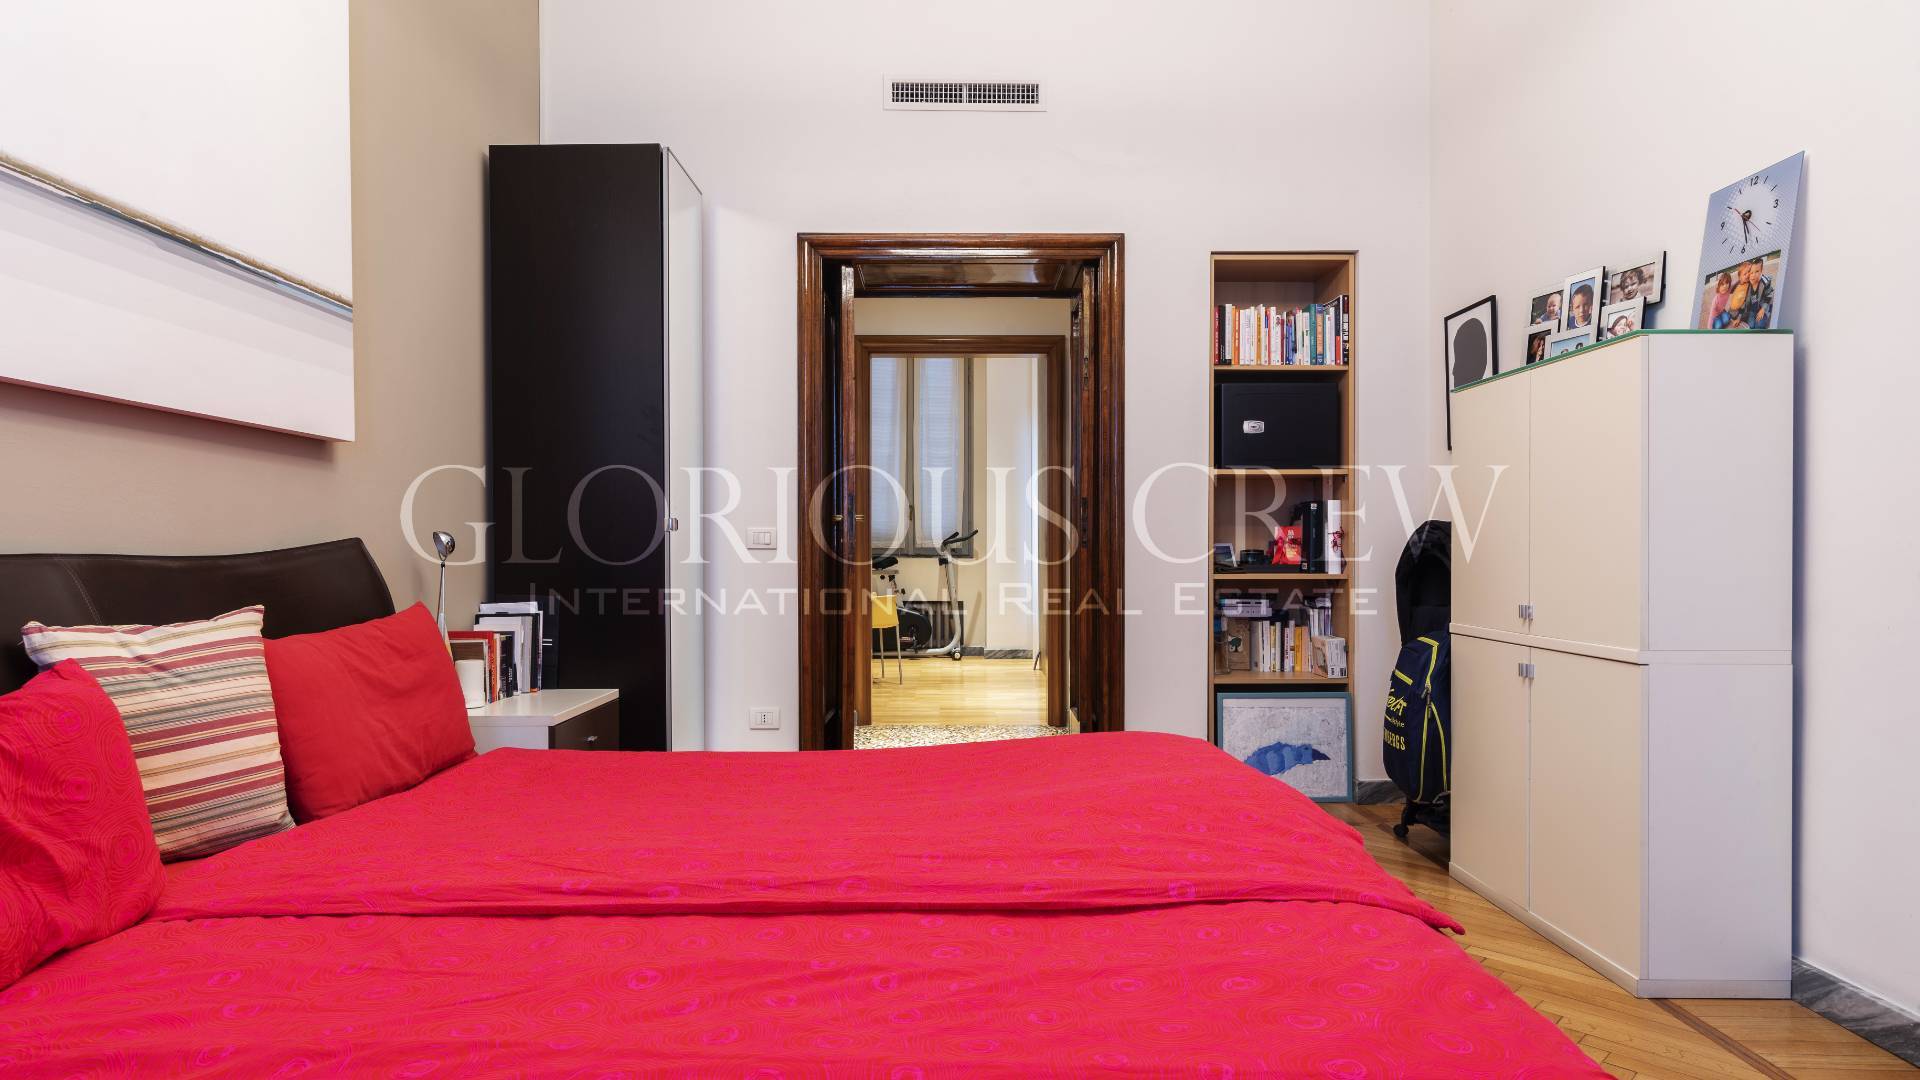 Appartamento in Vendita a Milano: 5 locali, 357 mq - Foto 9